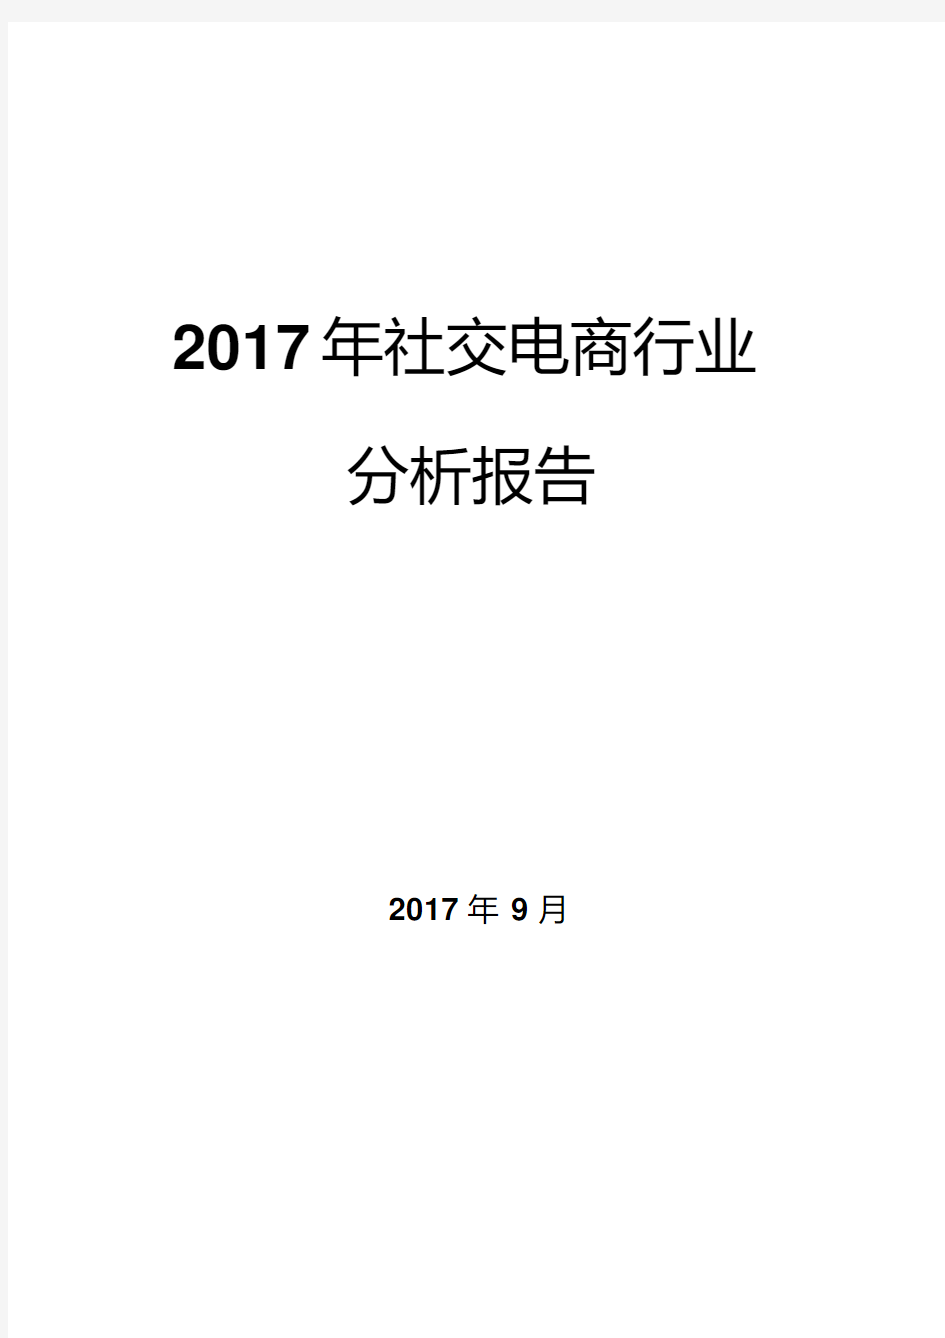 2017年社交电商行业分析报告